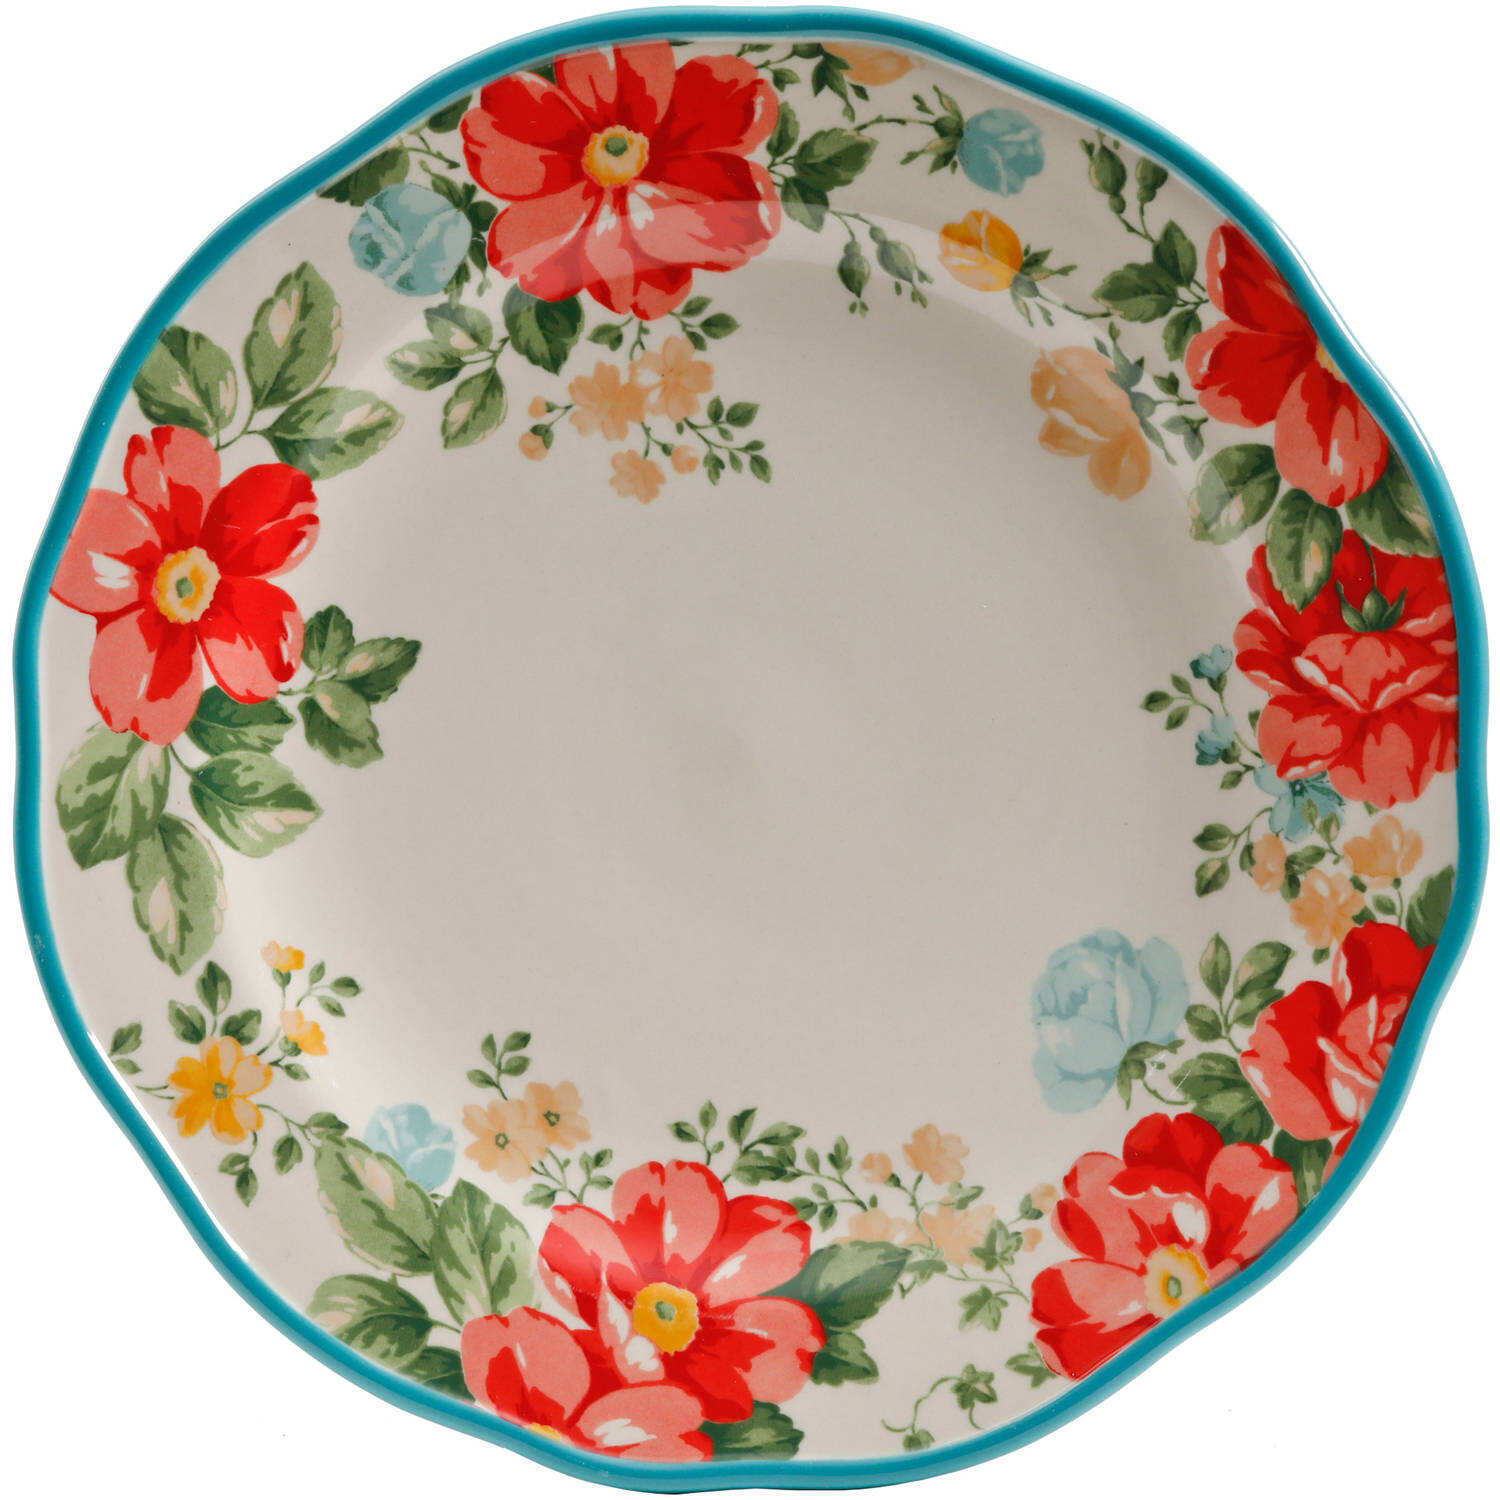 Vintage Floral 12-Piece Dinnerware Set. Teal